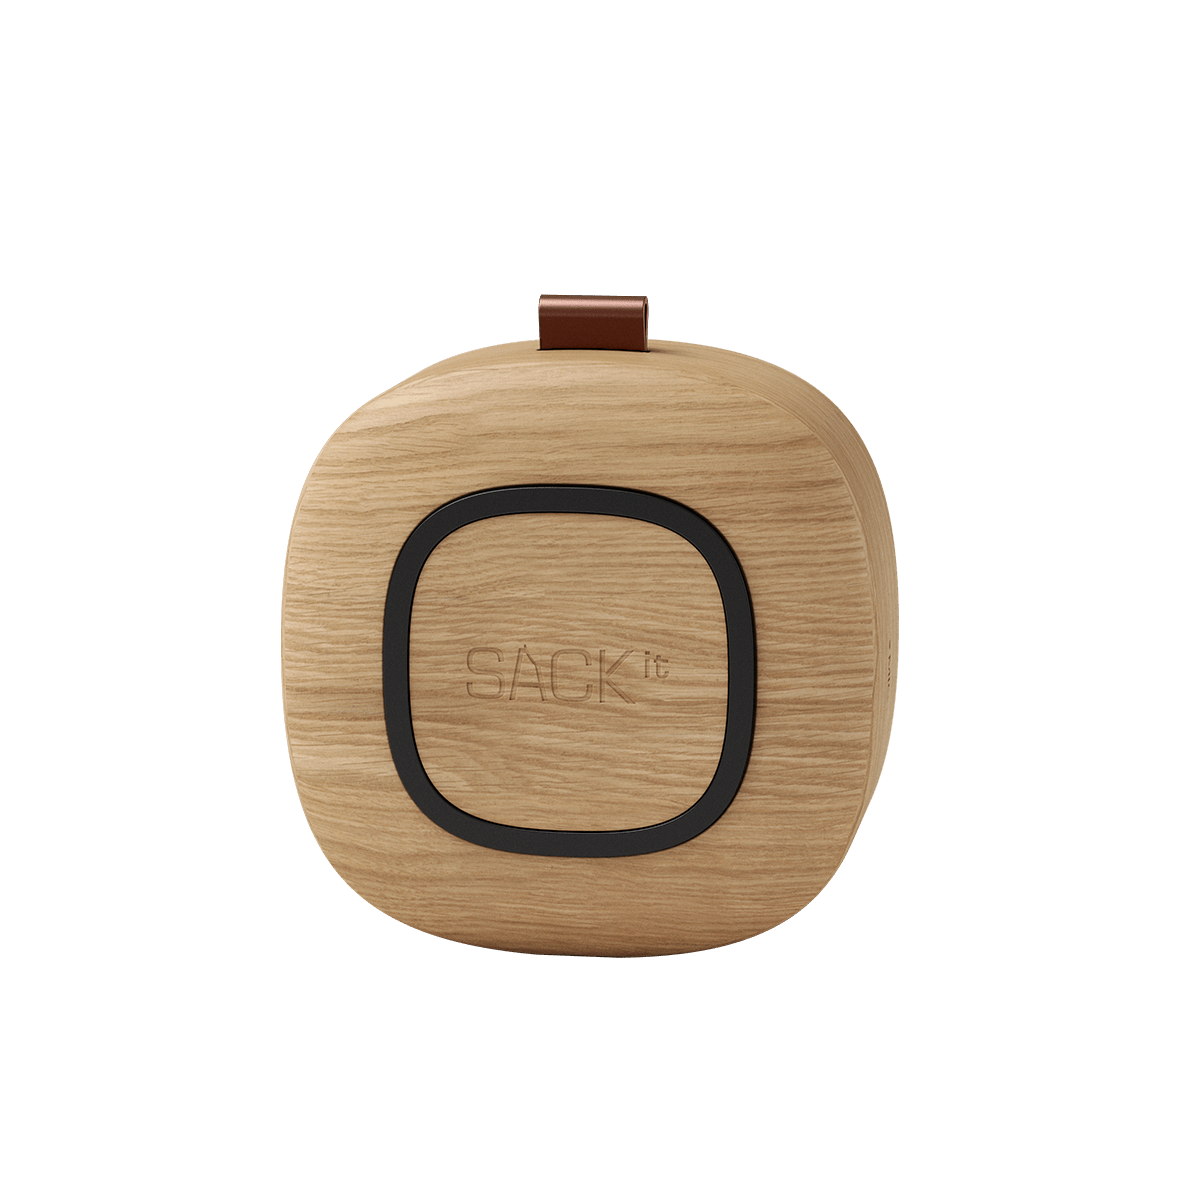  | Go Wood - Natural Oak | SACKit